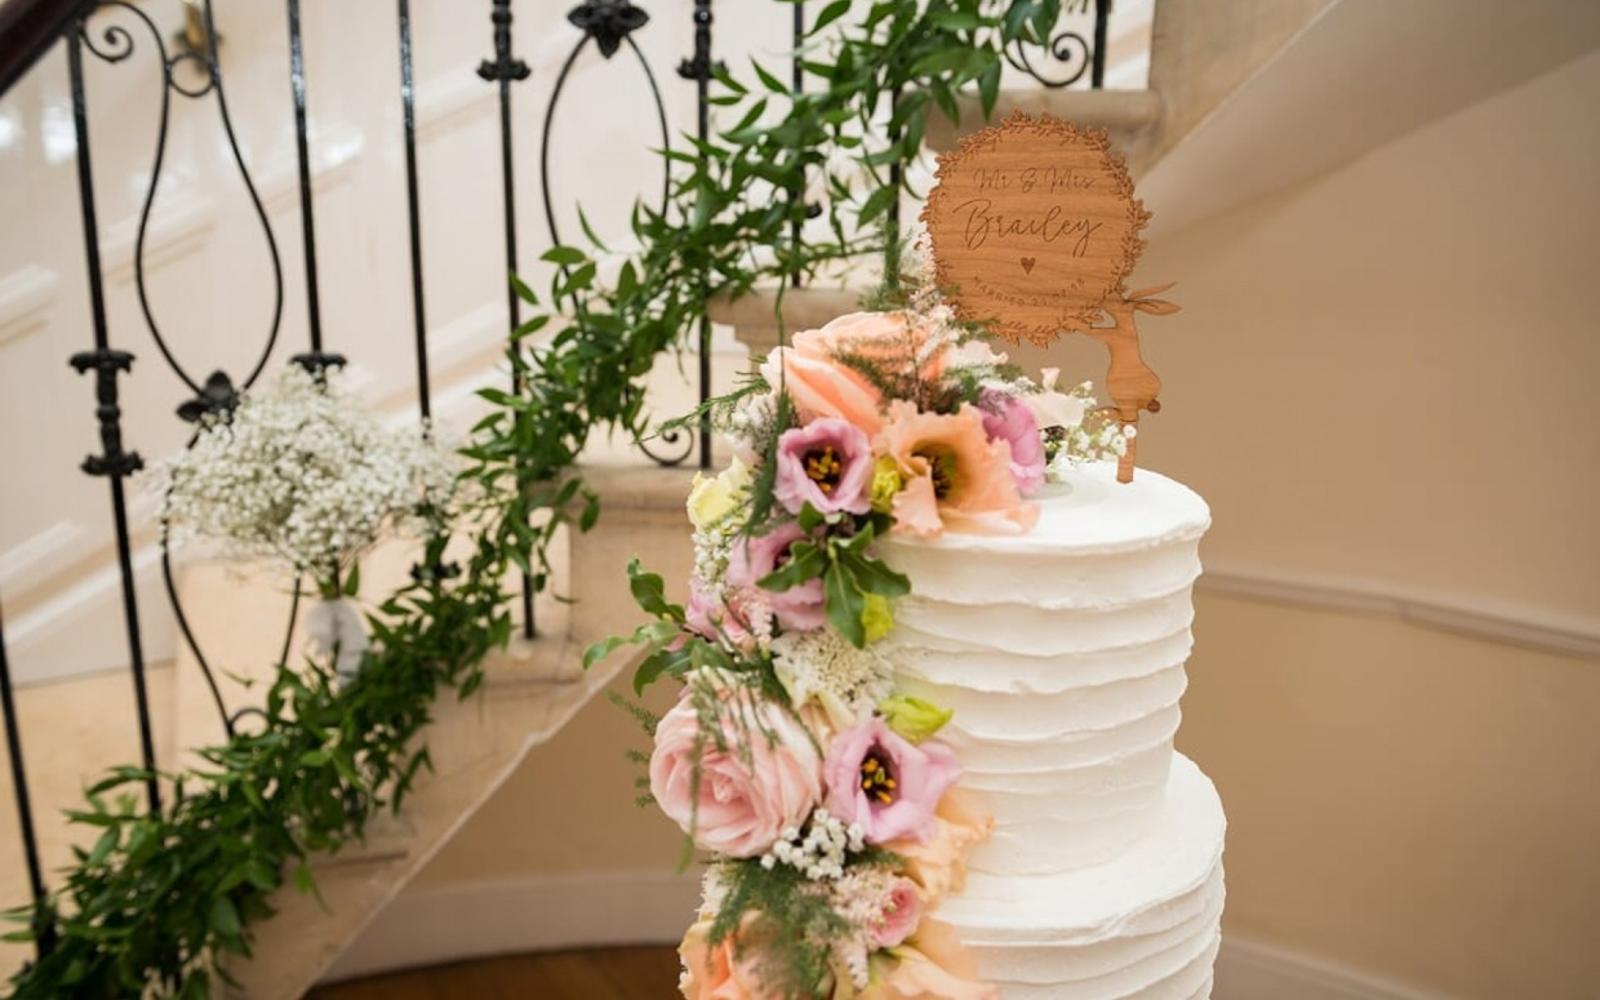 Kimmi's Cakes real wedding cake designer Swindon Eastington Park Gloucester buttercream